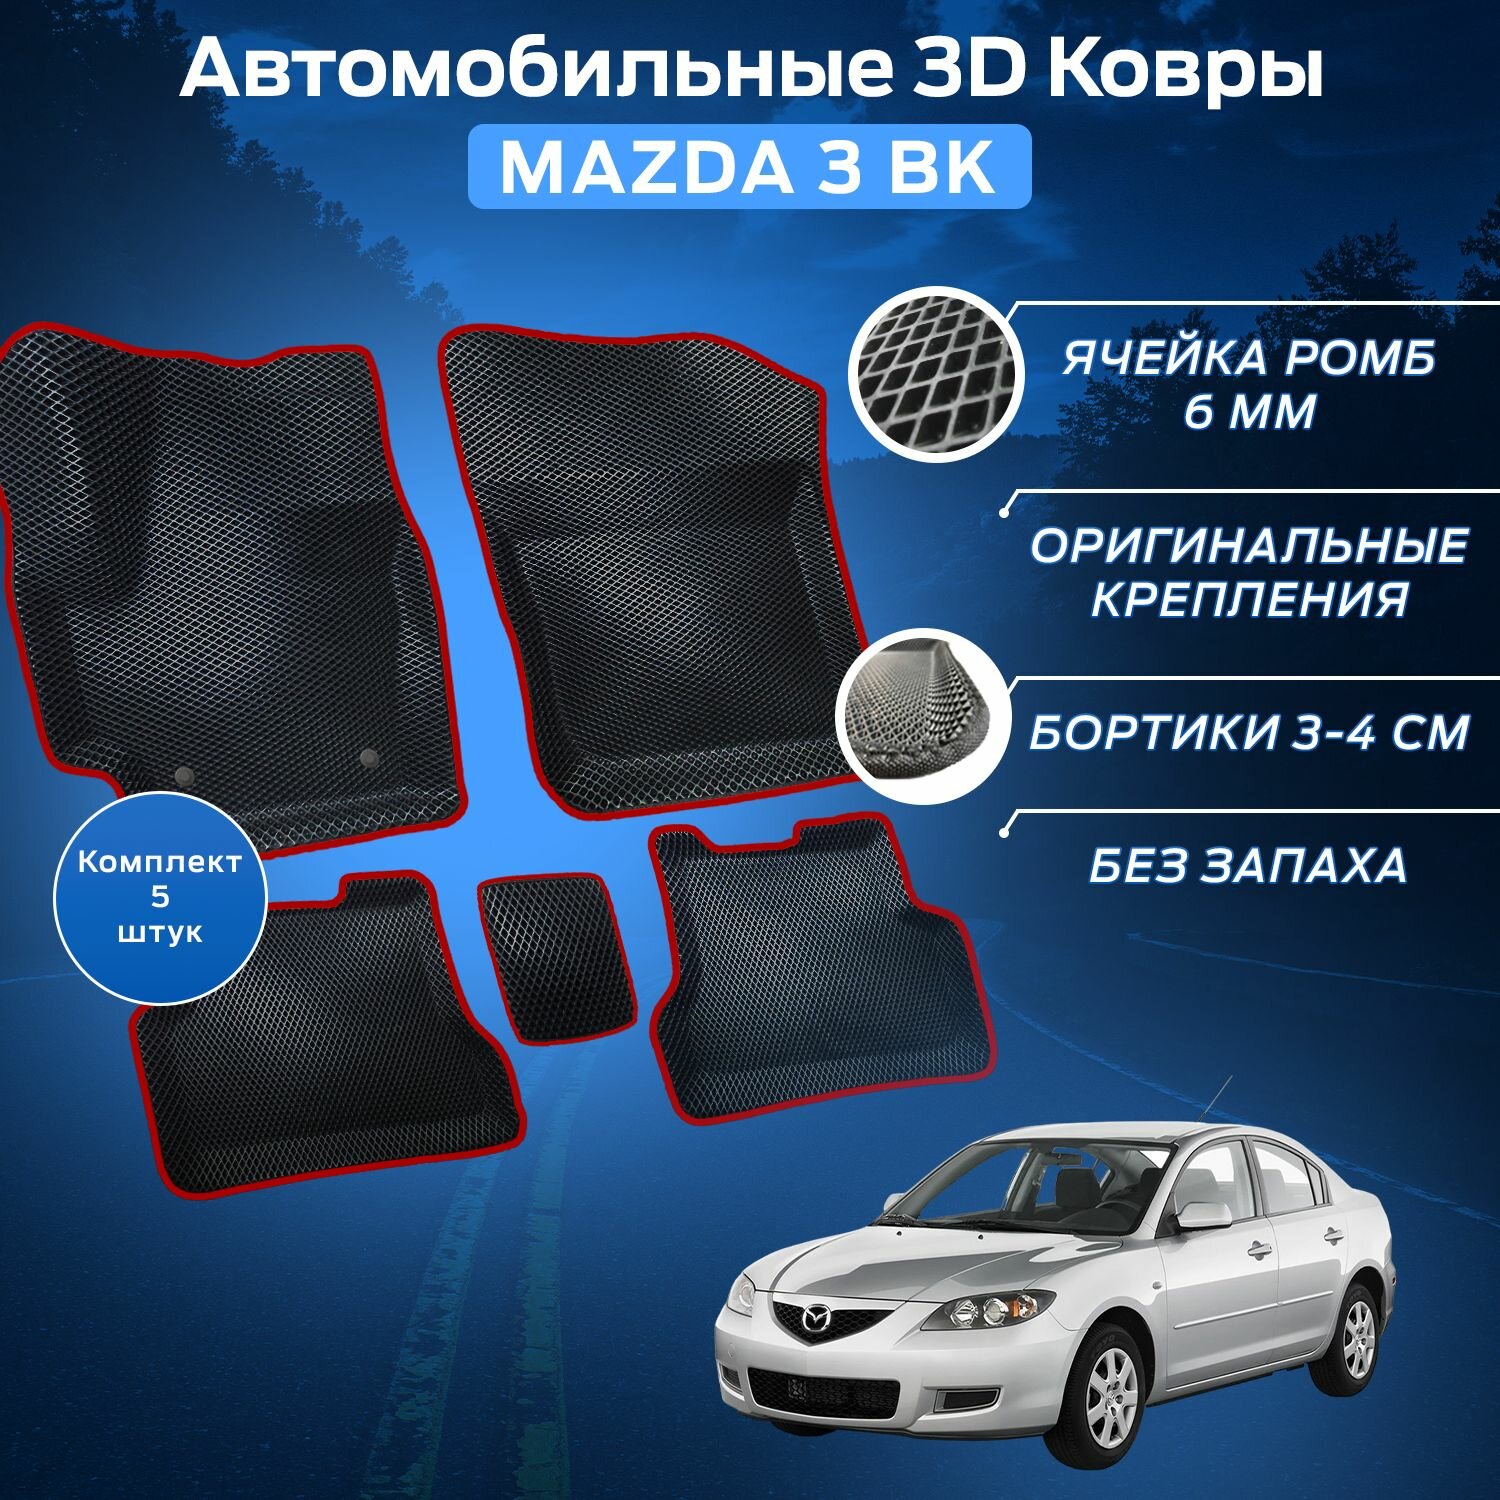 Пресс-EVA 3Д Ковры Мазда 3 БК (Ева, эва, коврики с бортами) Mazda 3 BK / Красные